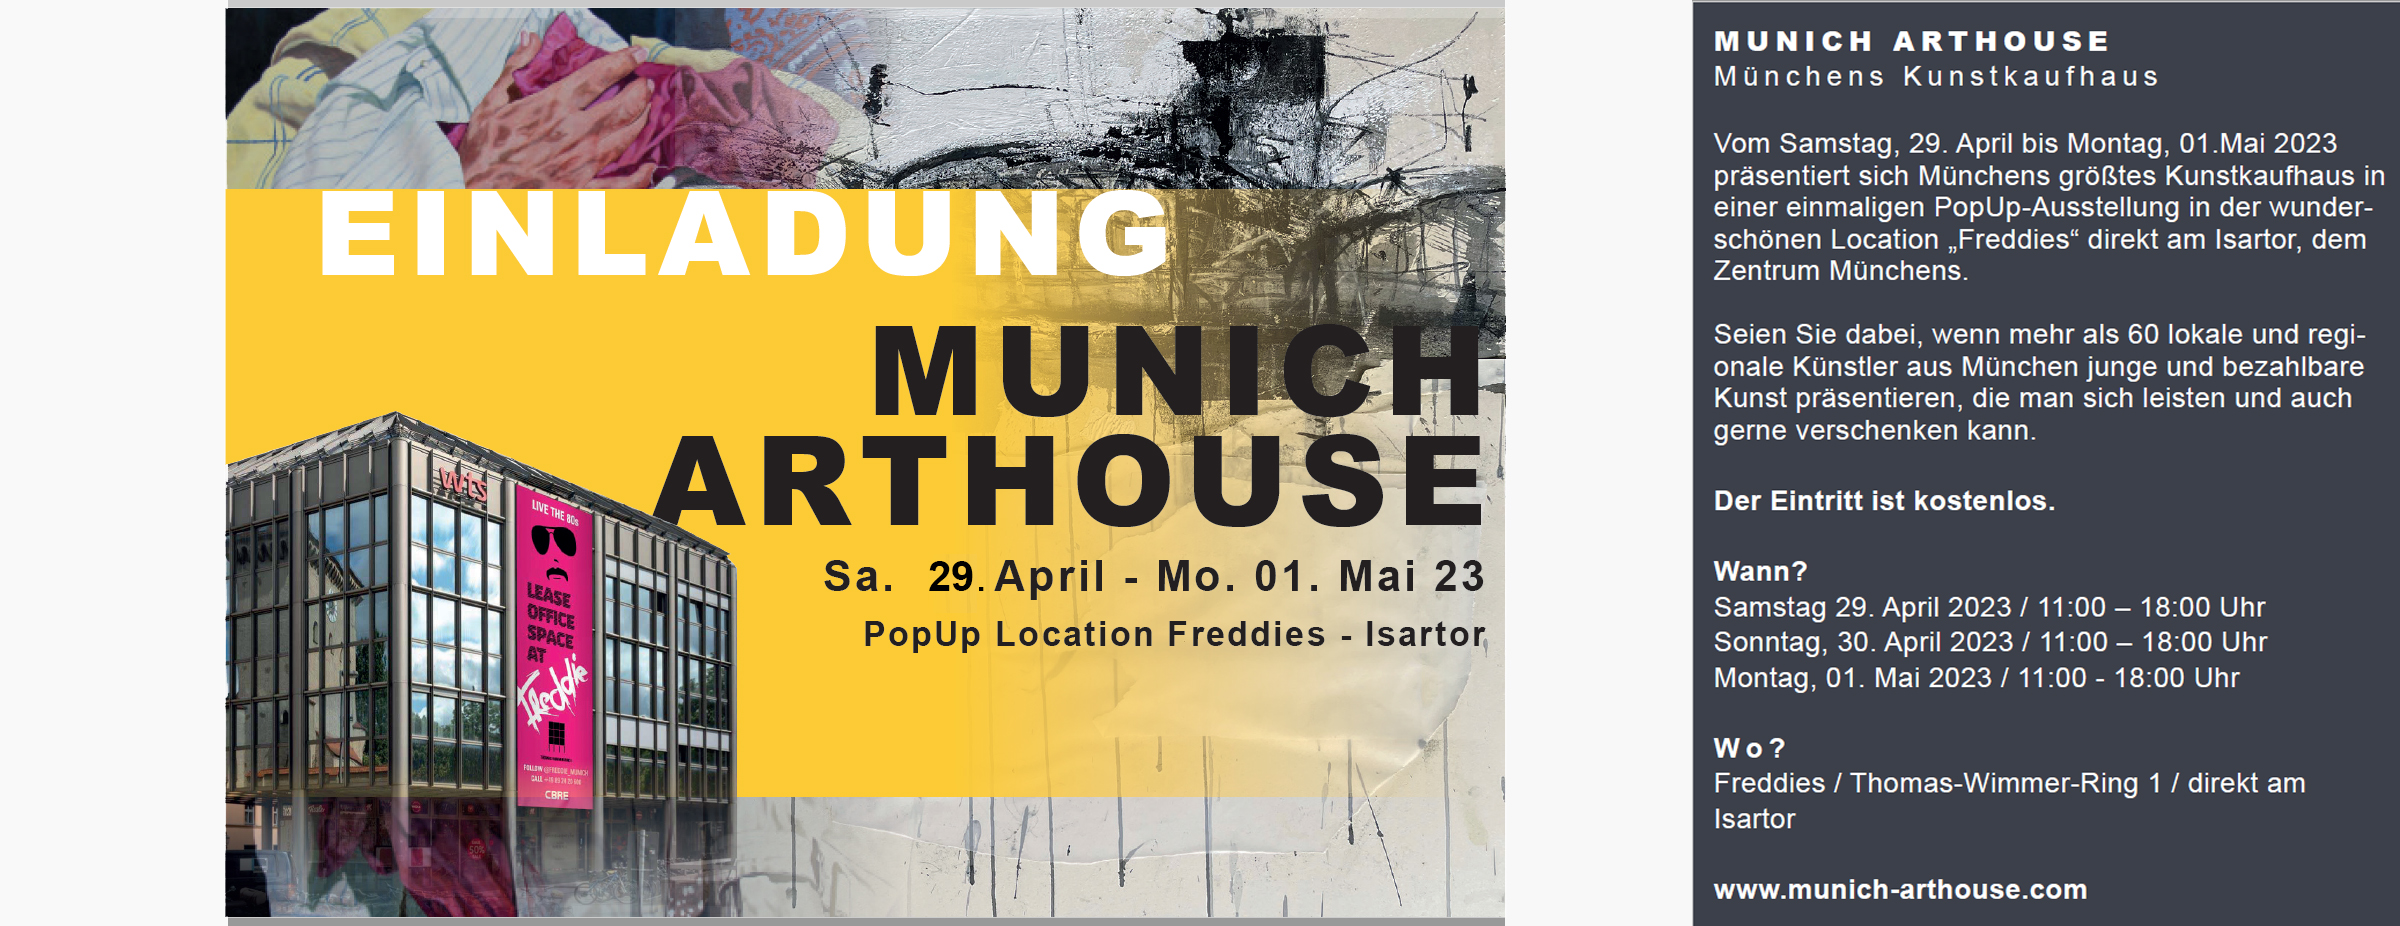 Einladung_MUNICH-ARTHOUSE_2023